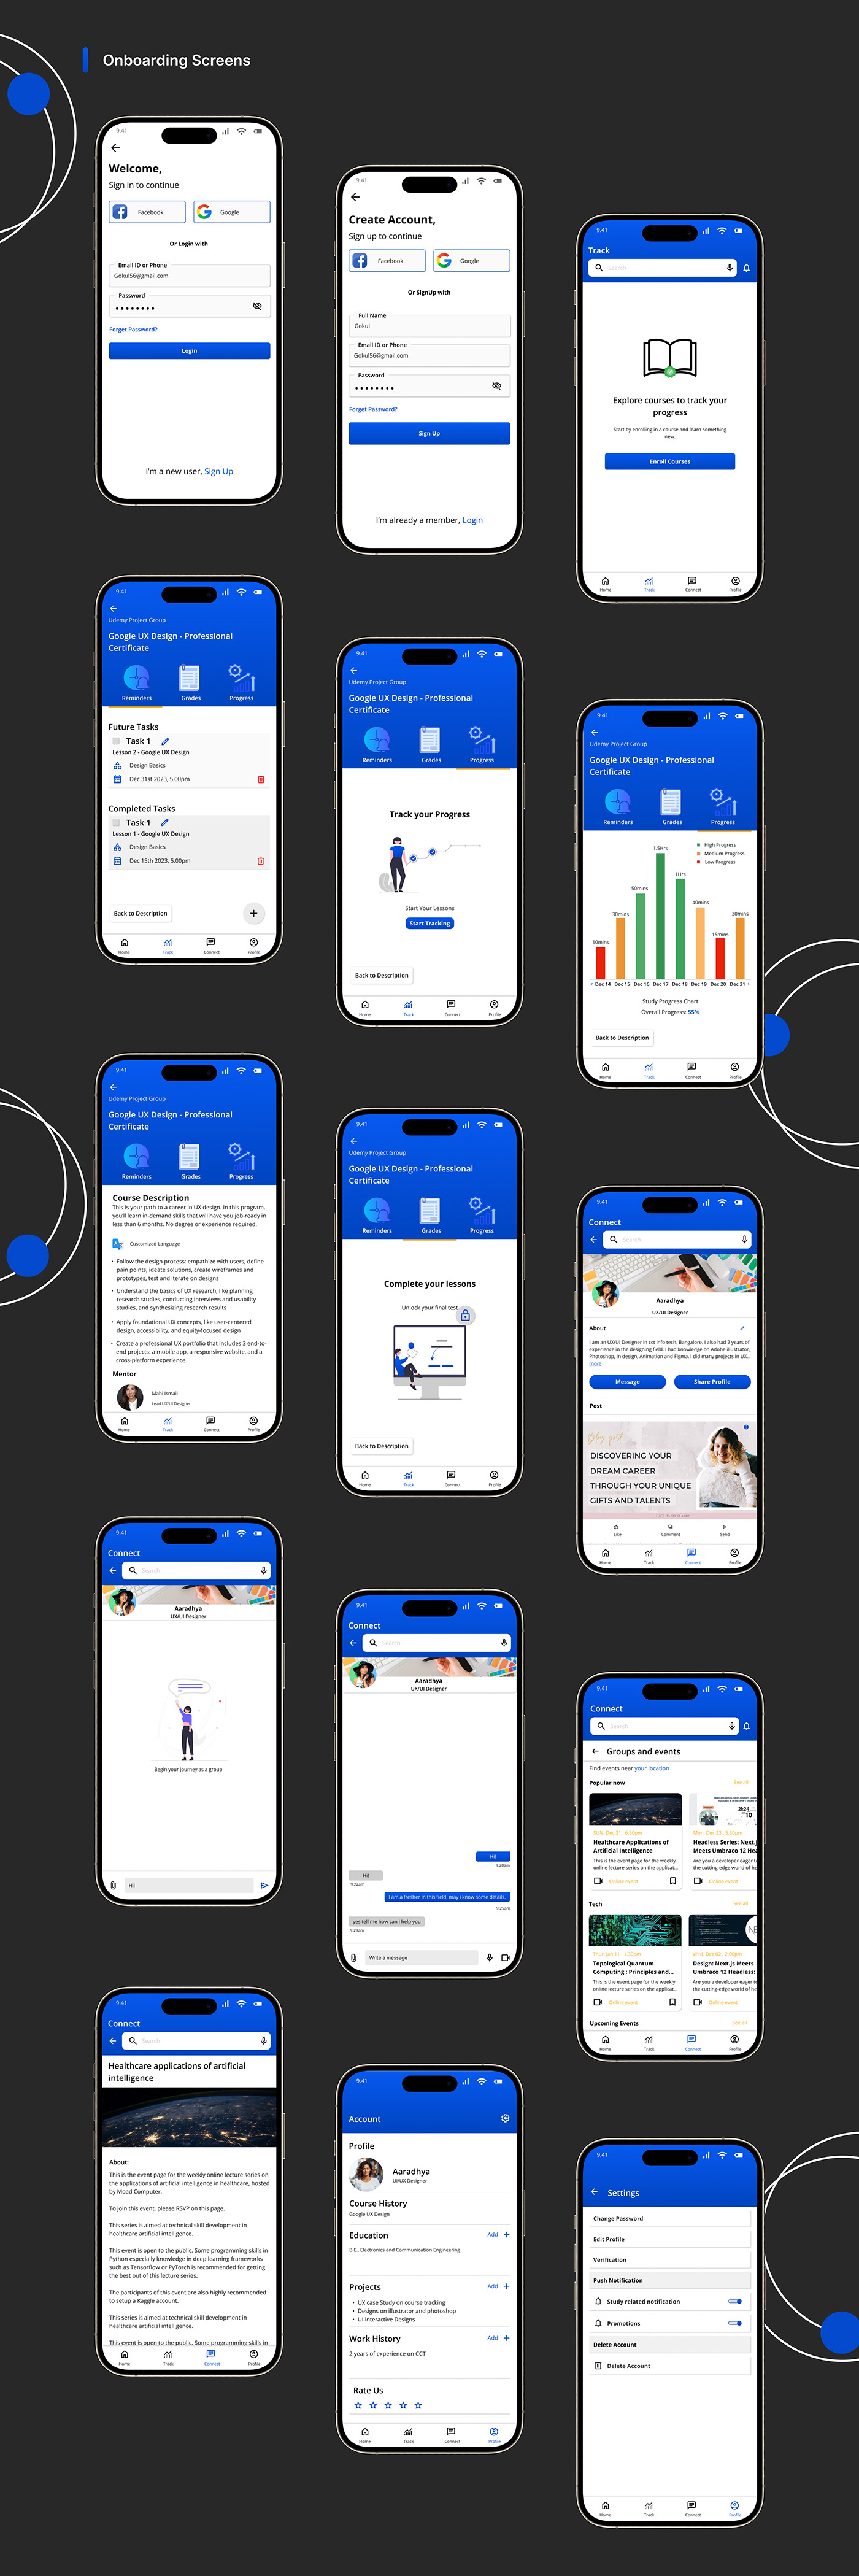 app design ui design Figma Mobile app user interface UI UX design Case Study UX Case Study research